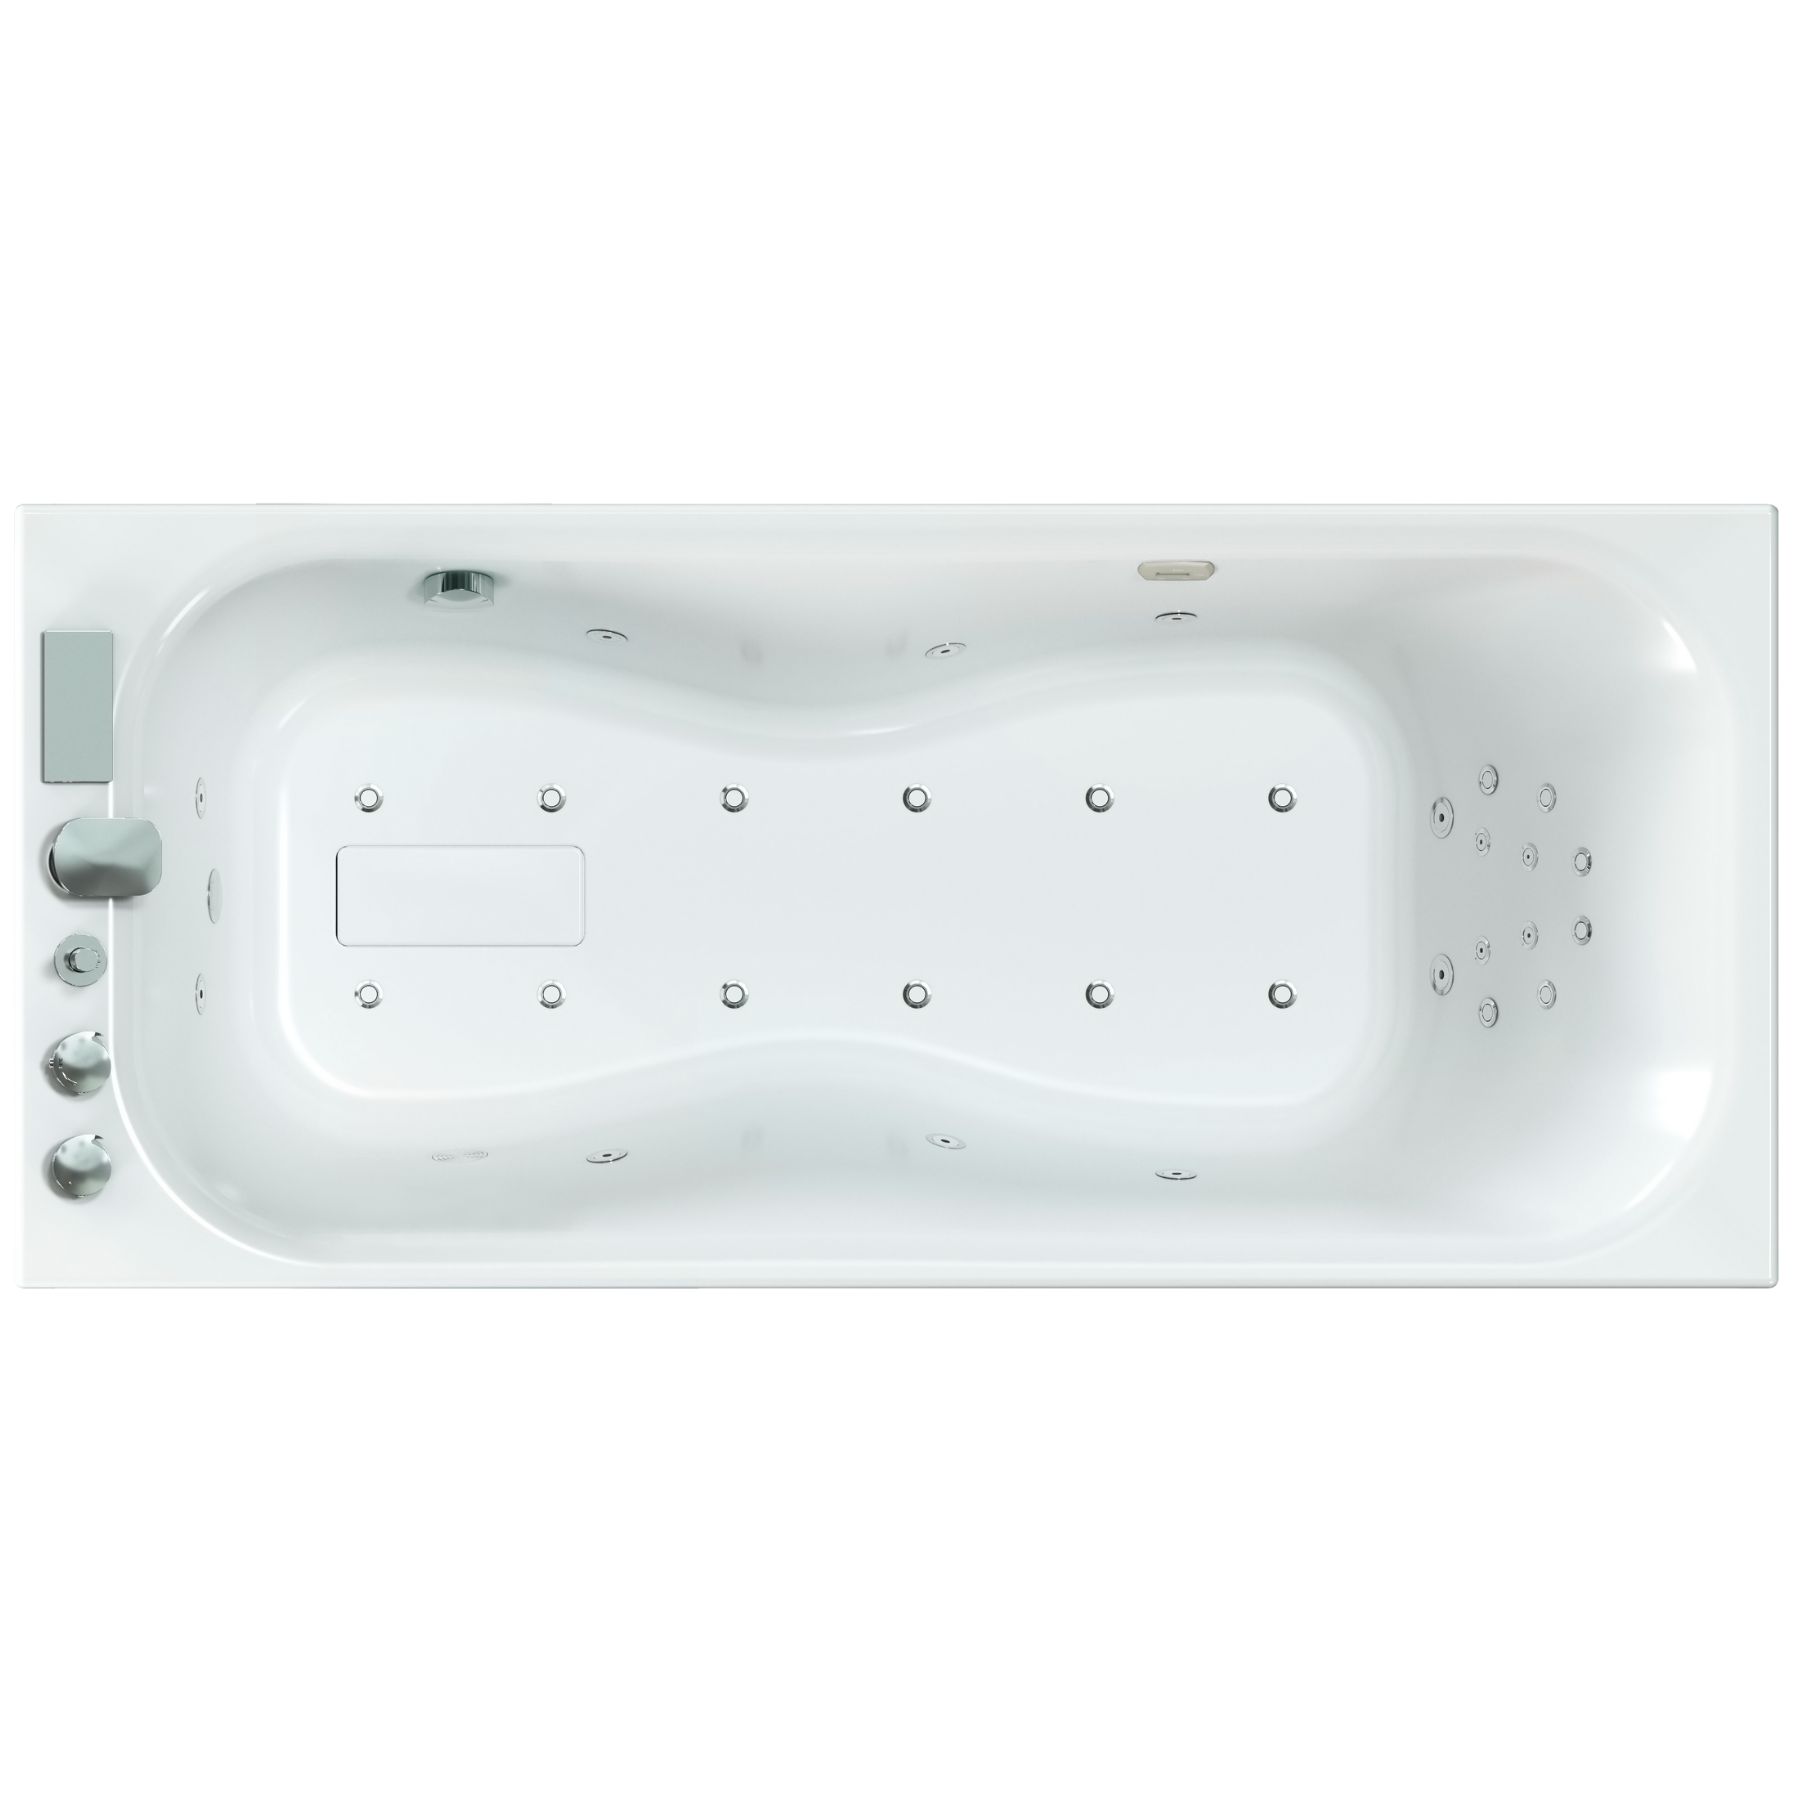 Baignoire balnéo ZUMBA 160x70 sur châssis métal, système balnéo VITALITÉ tête bain à droite finition blanche mat non brillante